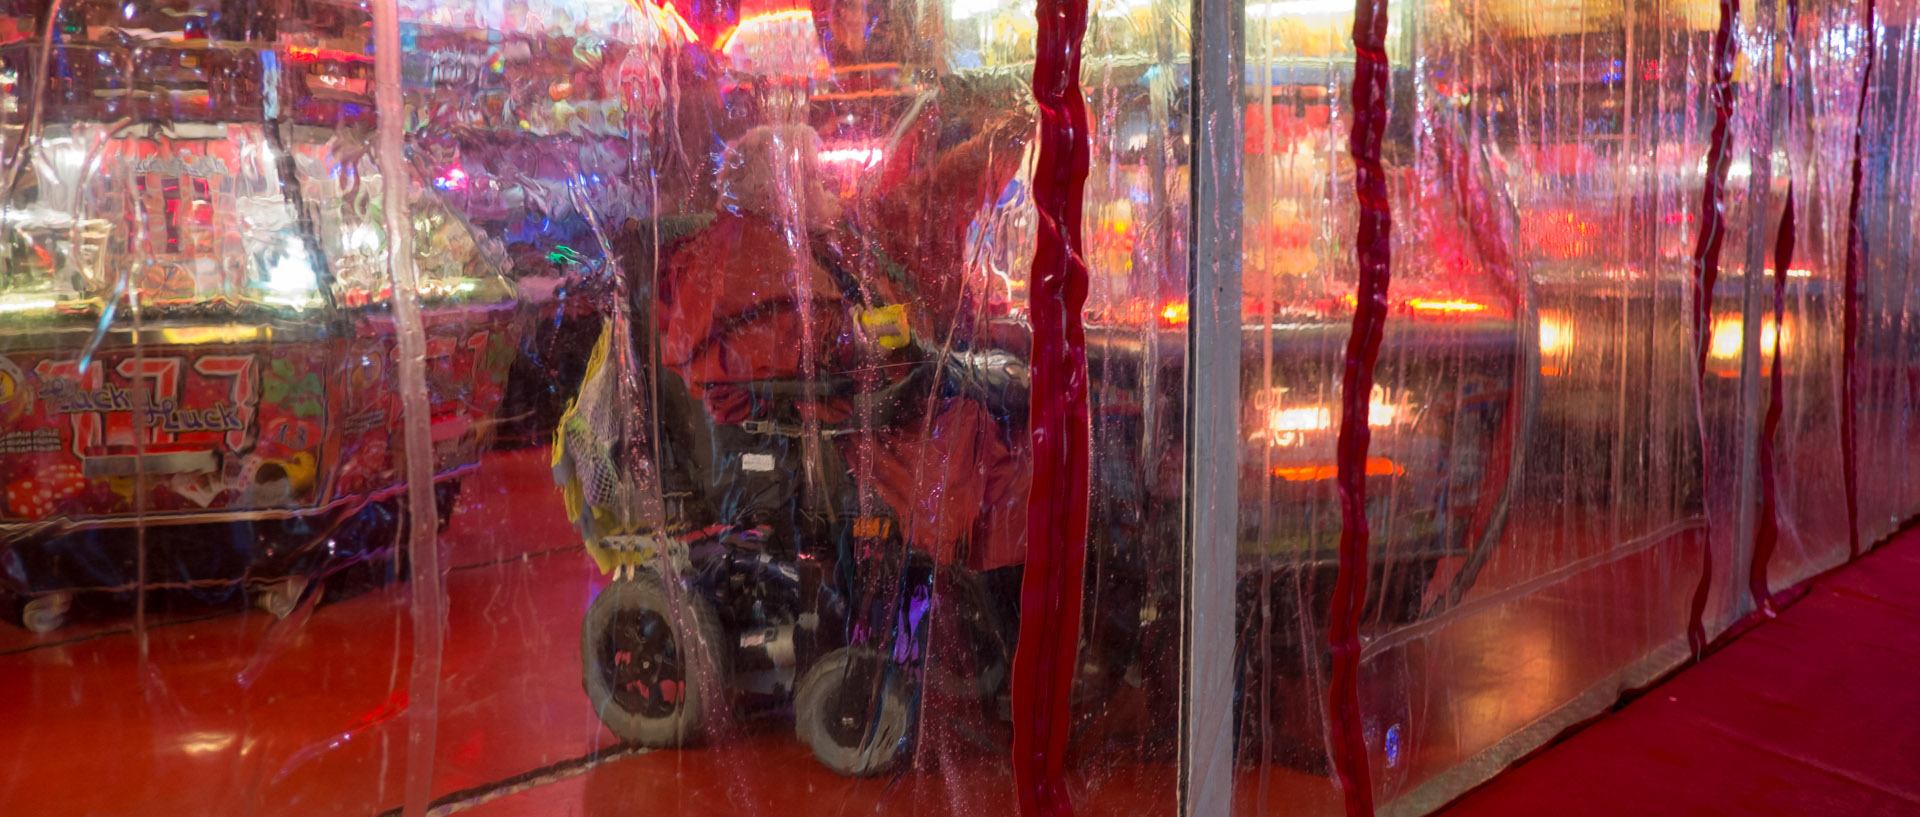 Femme handicapée jouant dans un stand de fête foraine, place de la République, à Tourcoing.